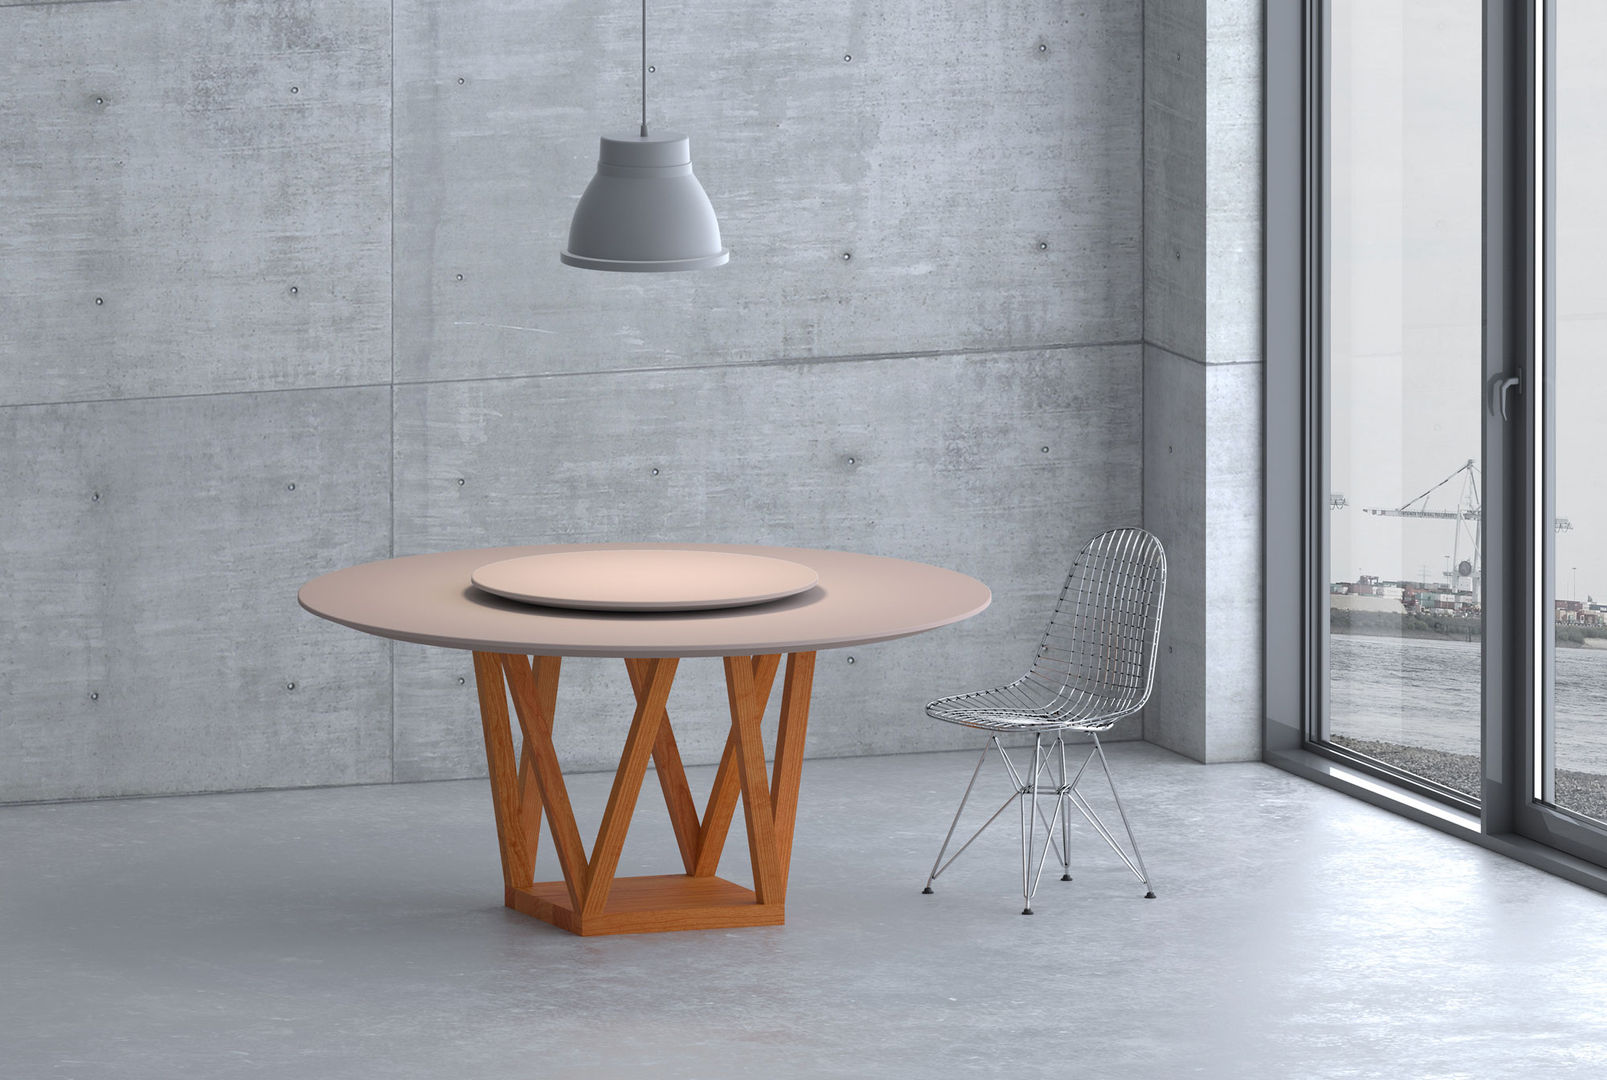 Tavolo diametro 160 cm di design legno e resina Mobili a Colori Sala da pranzo moderna Legno massello Variopinto tavolo design,tavolo diamentro 160,tavolo rotondo,tavolo massello